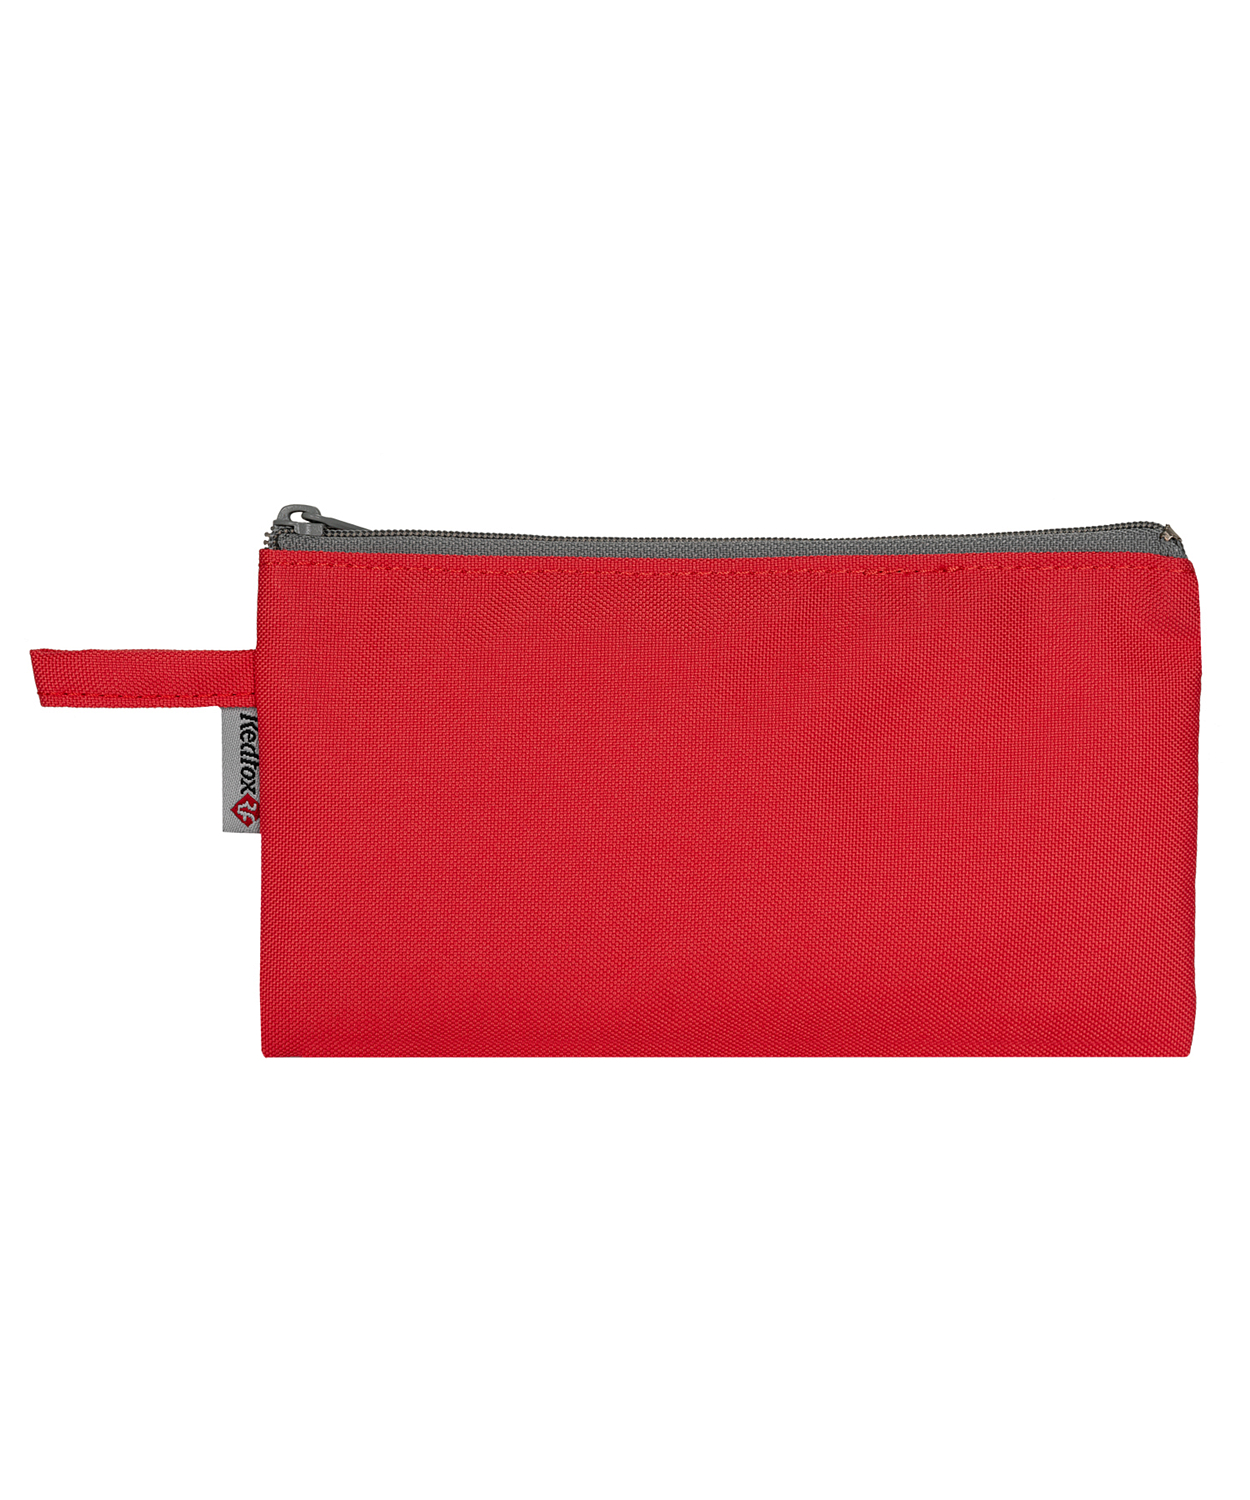 Рюкзак Red Fox Bookbag S1 Coral Fusion